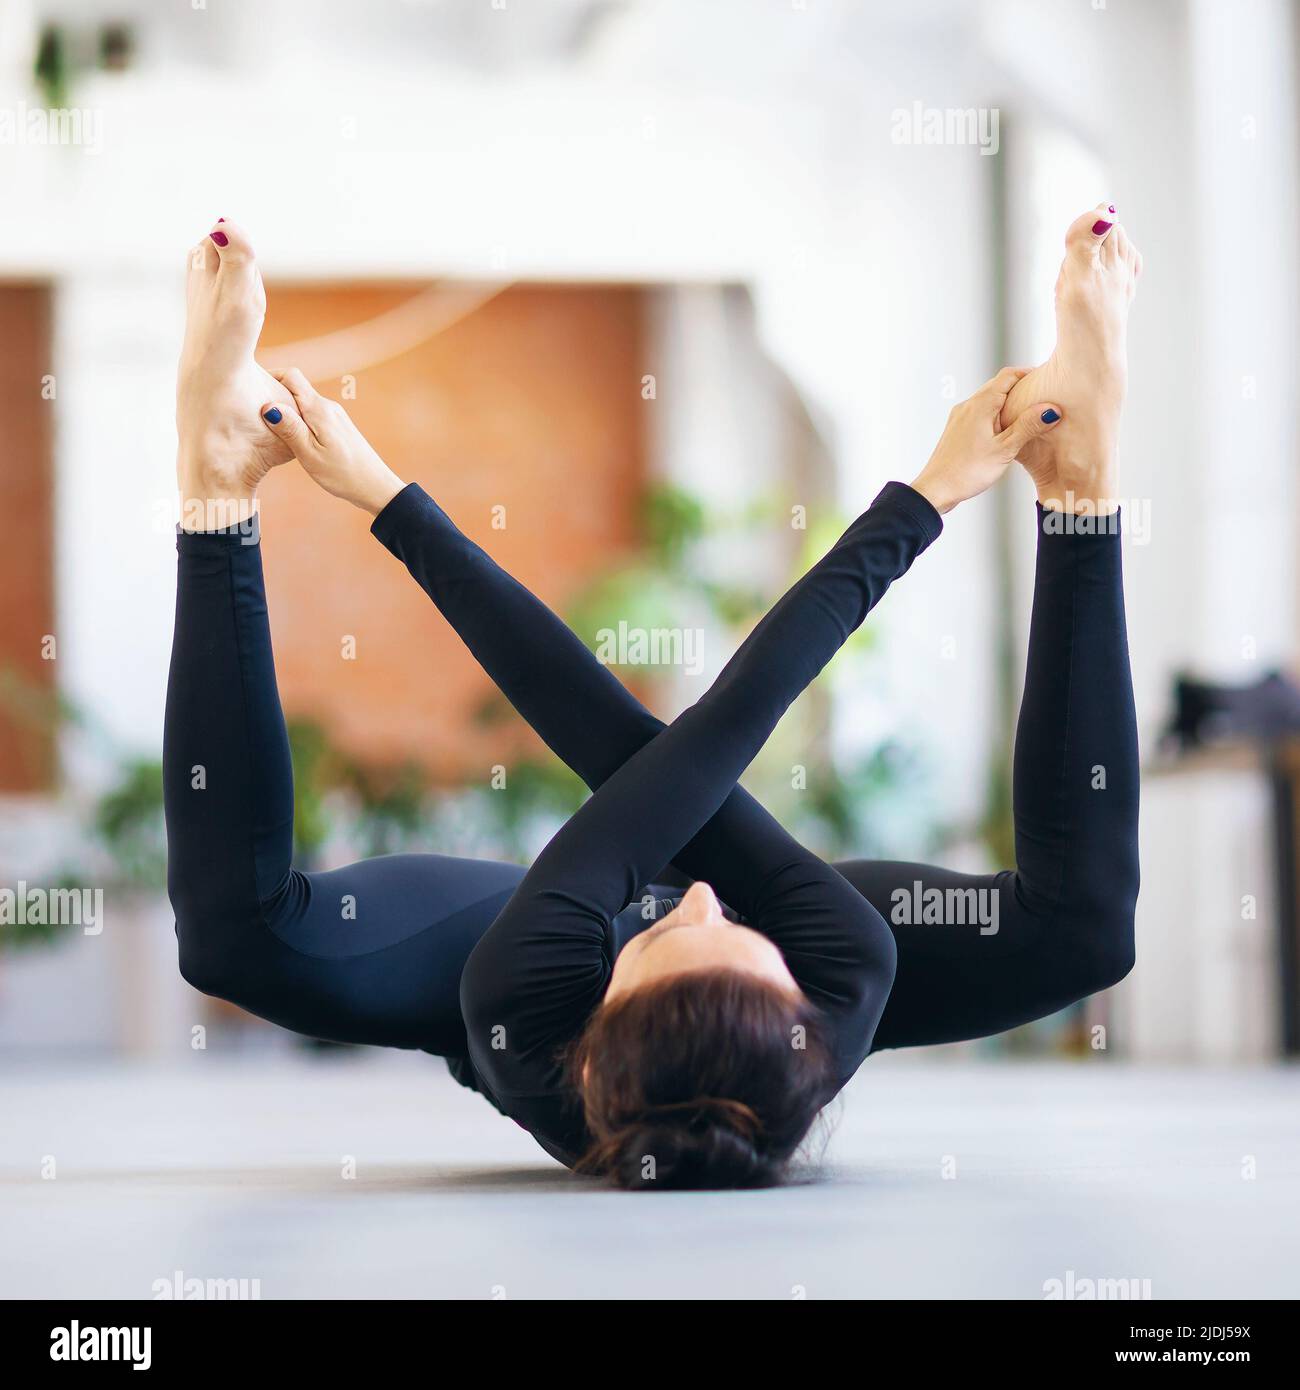 Mujer en ropa deportiva negra practicando yoga haciendo ejercicio supta rudrasana, haciendo ejercicio mientras se encuentra tumbado en una colchoneta en la habitación Foto de stock